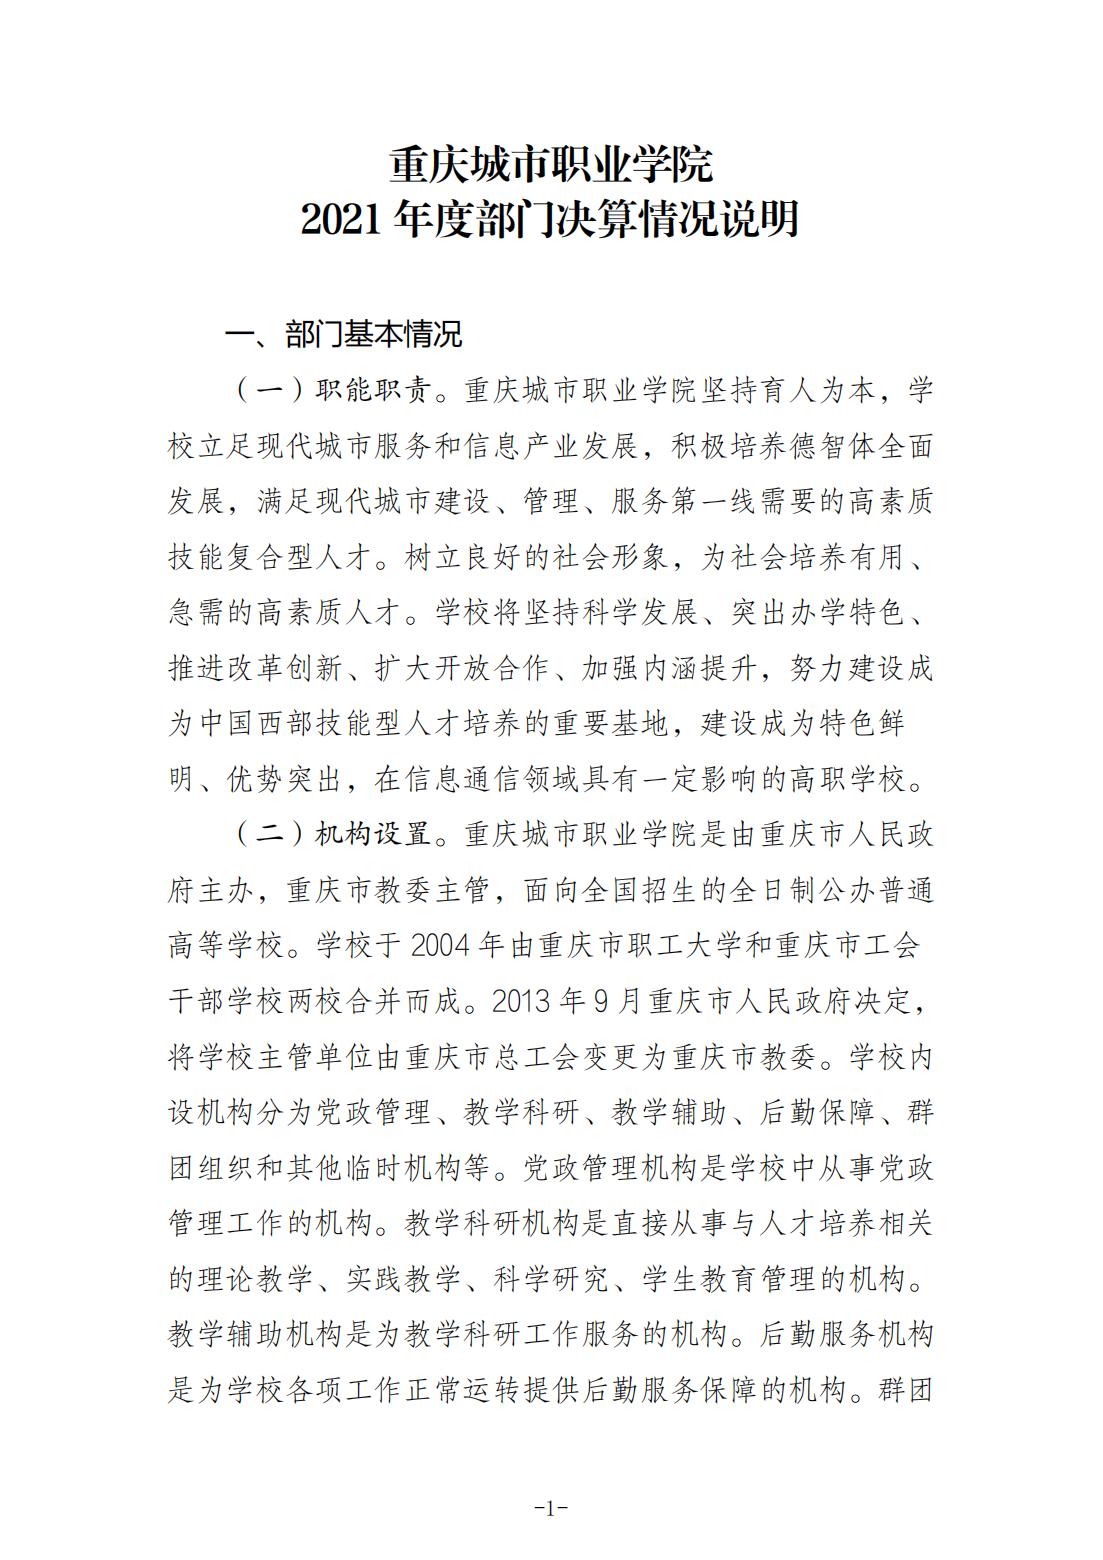 重庆城市职业学院2021年度部门决算情况说明_00.jpg